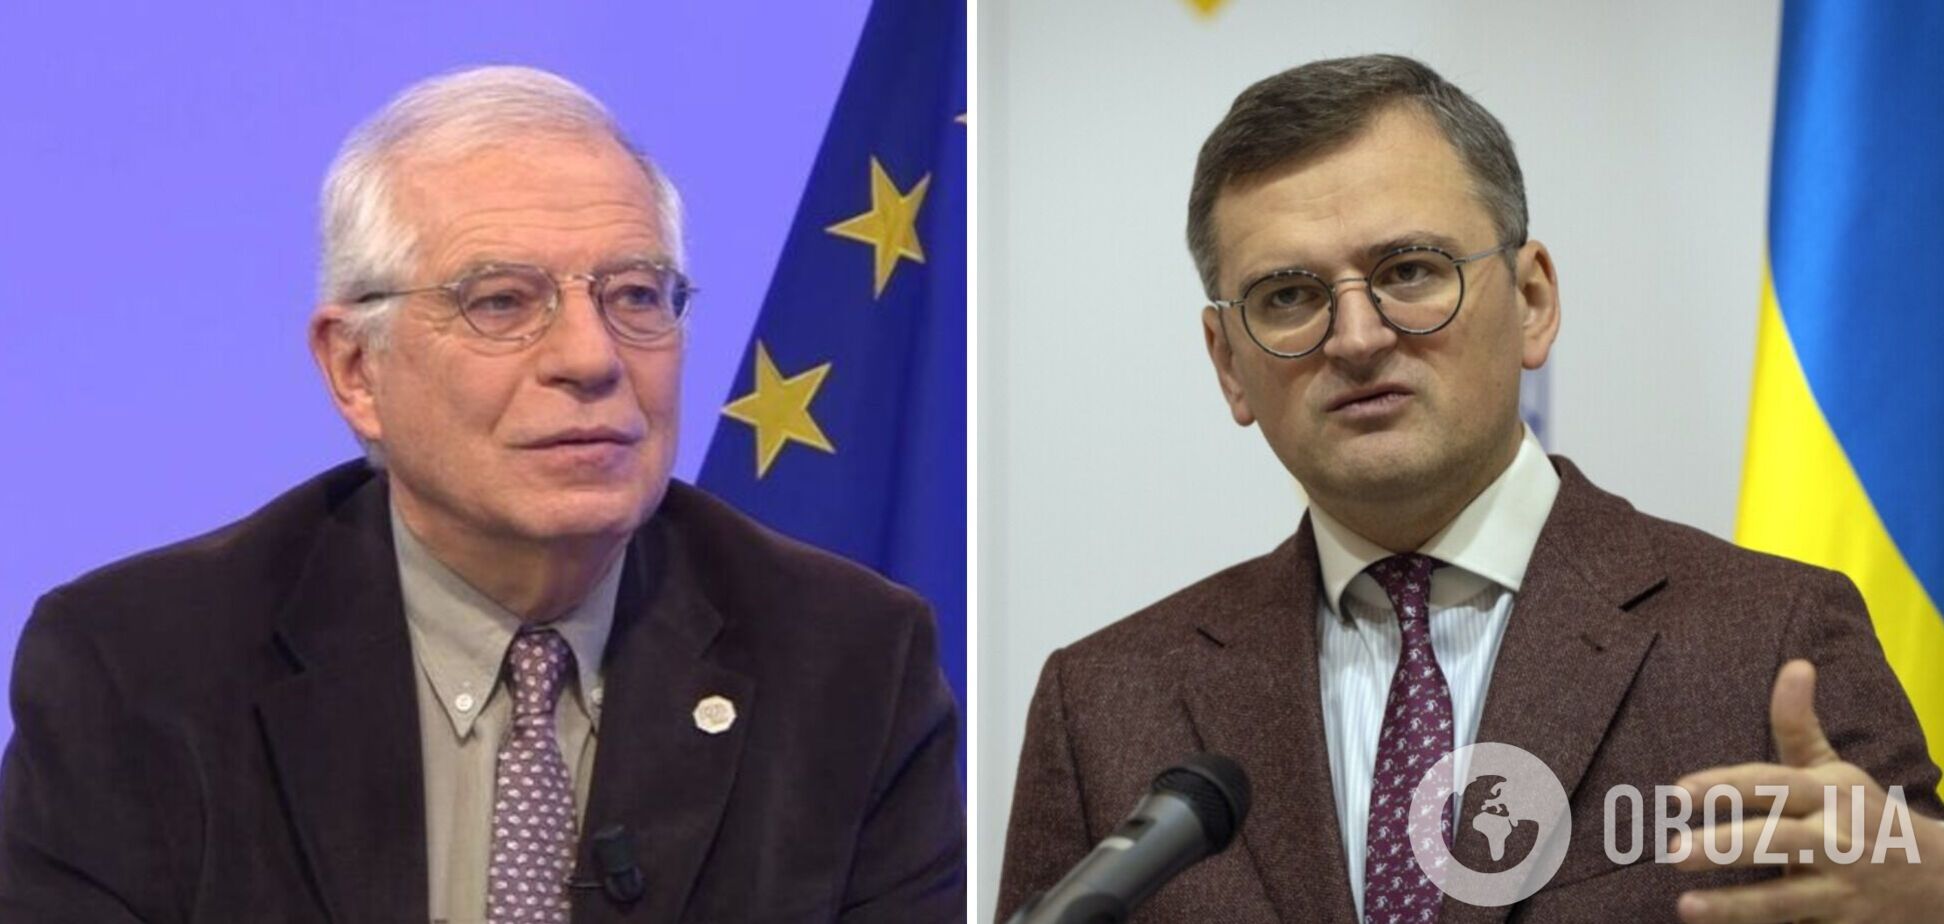 Patriot'ична дипломатія у розпалі: Кулеба і Боррель обговорили посилення української ППО